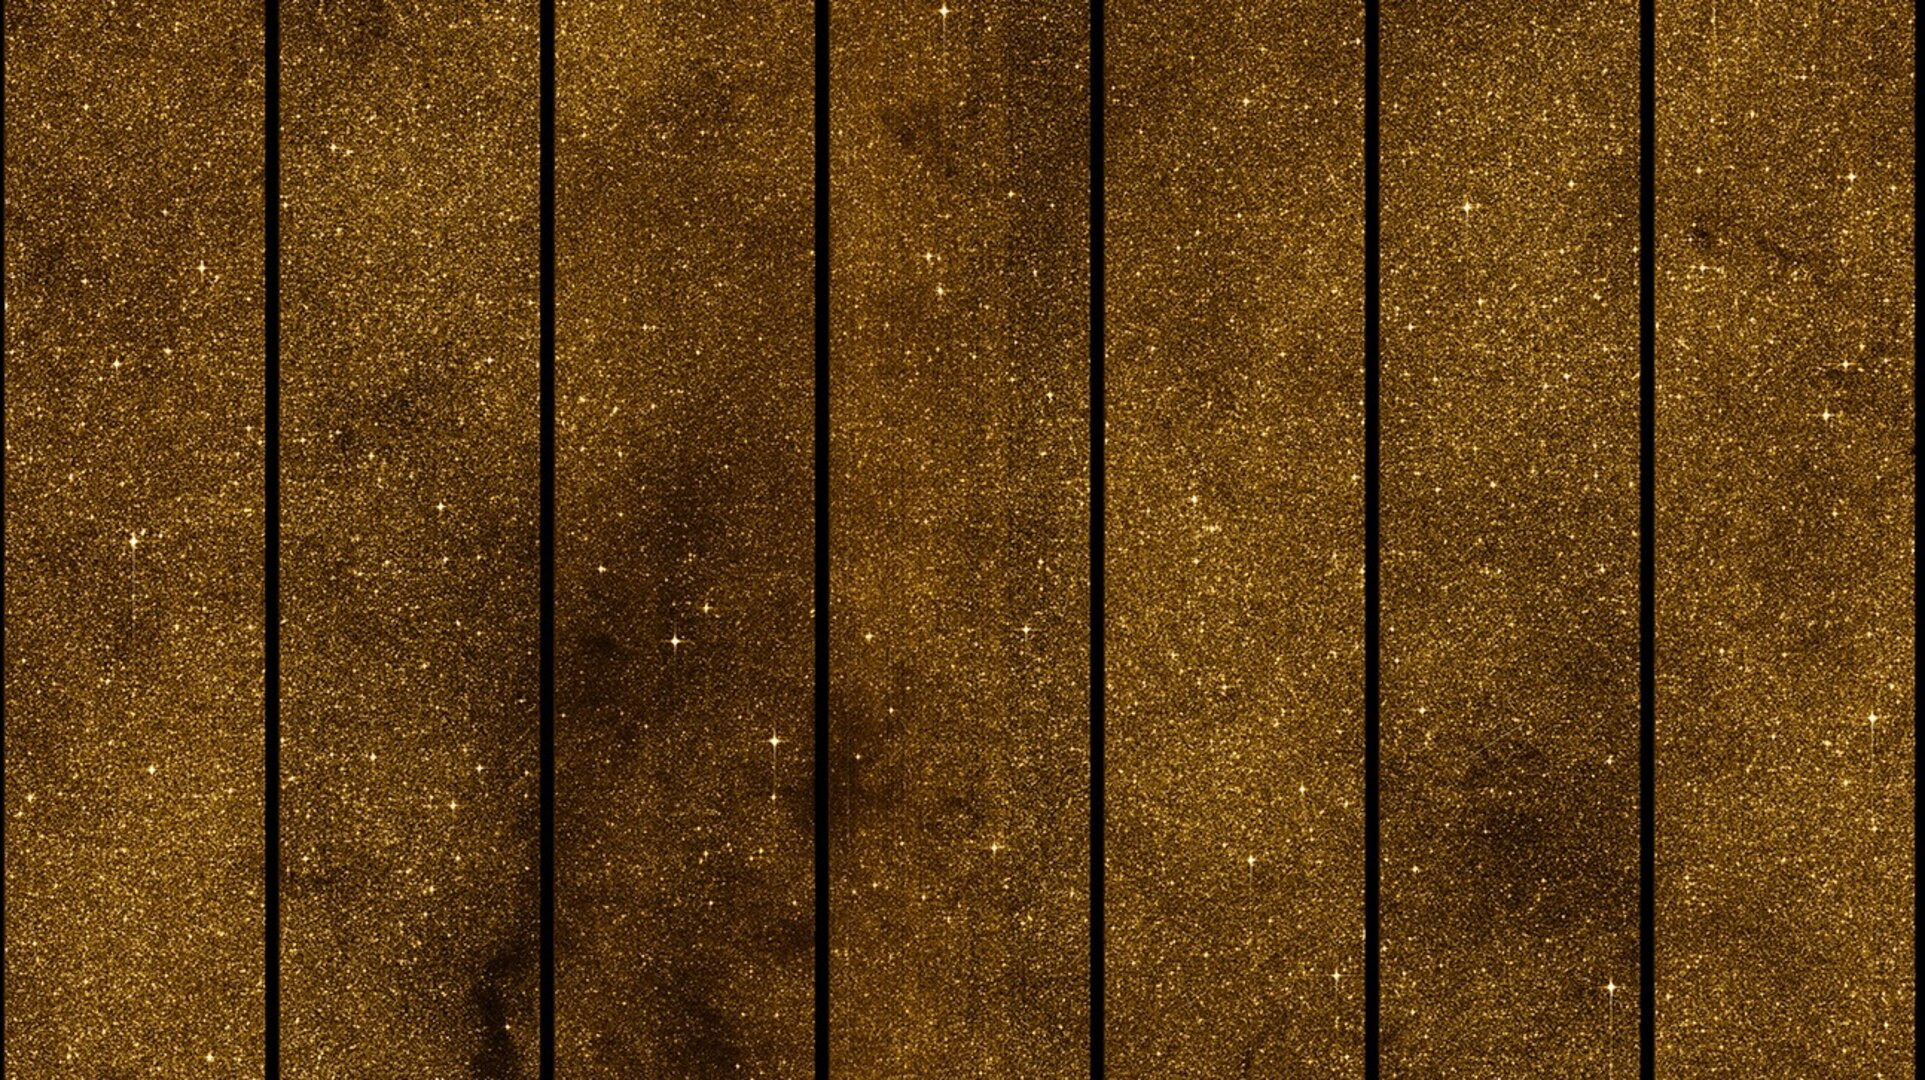 Απεικόνιση του ουρανού κοντά στο κέντρο του Γαλαξία μας από την αποστολή Γαία